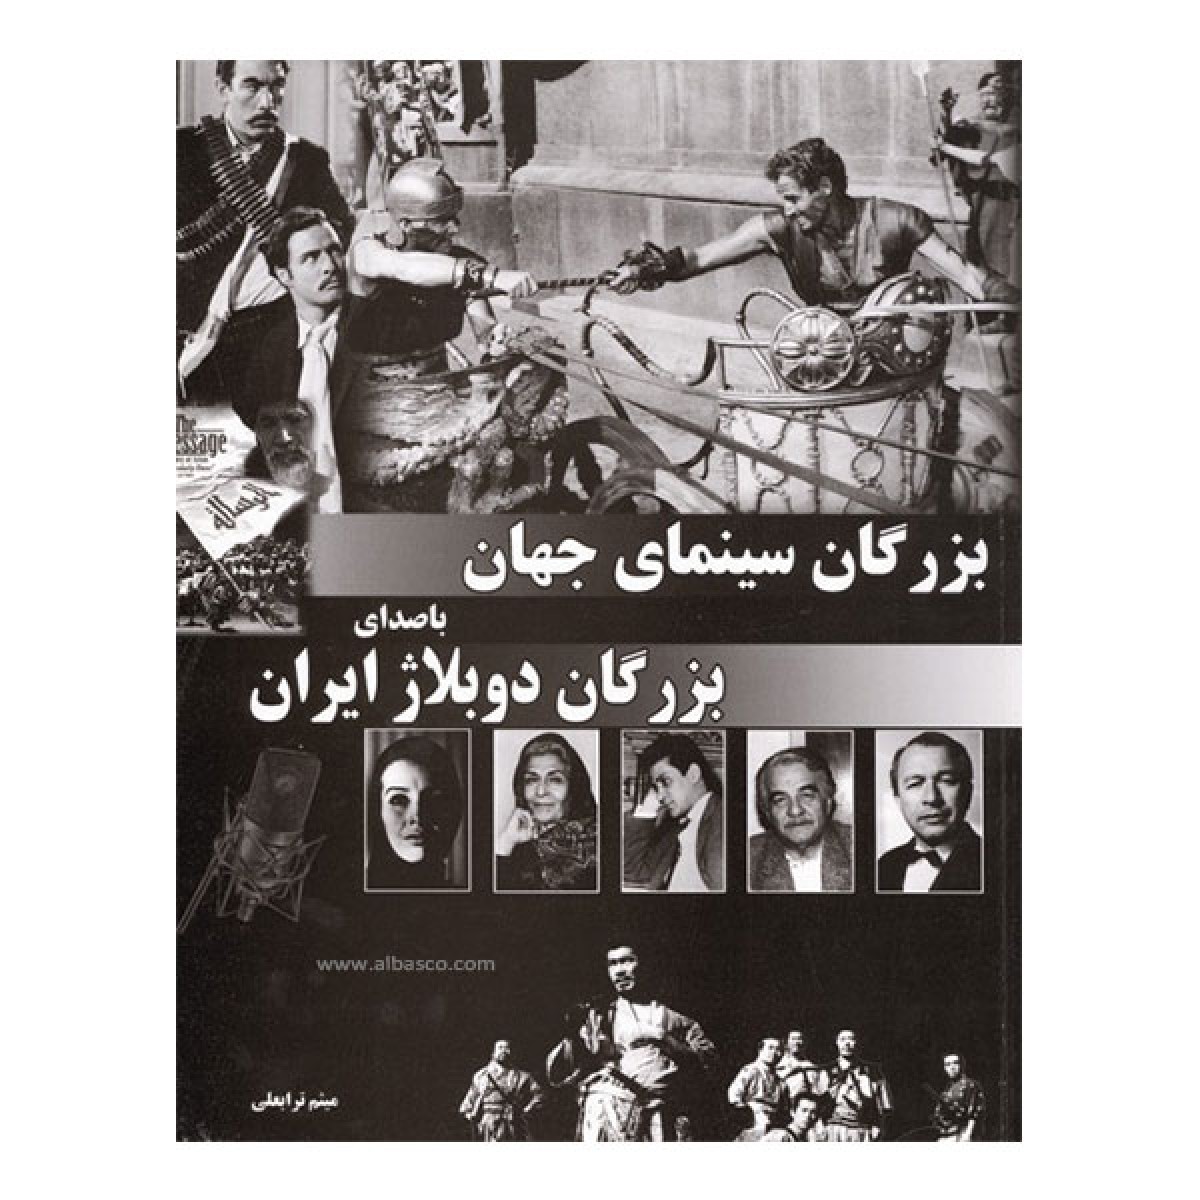 تاریخچه دوبلاژ در ایران